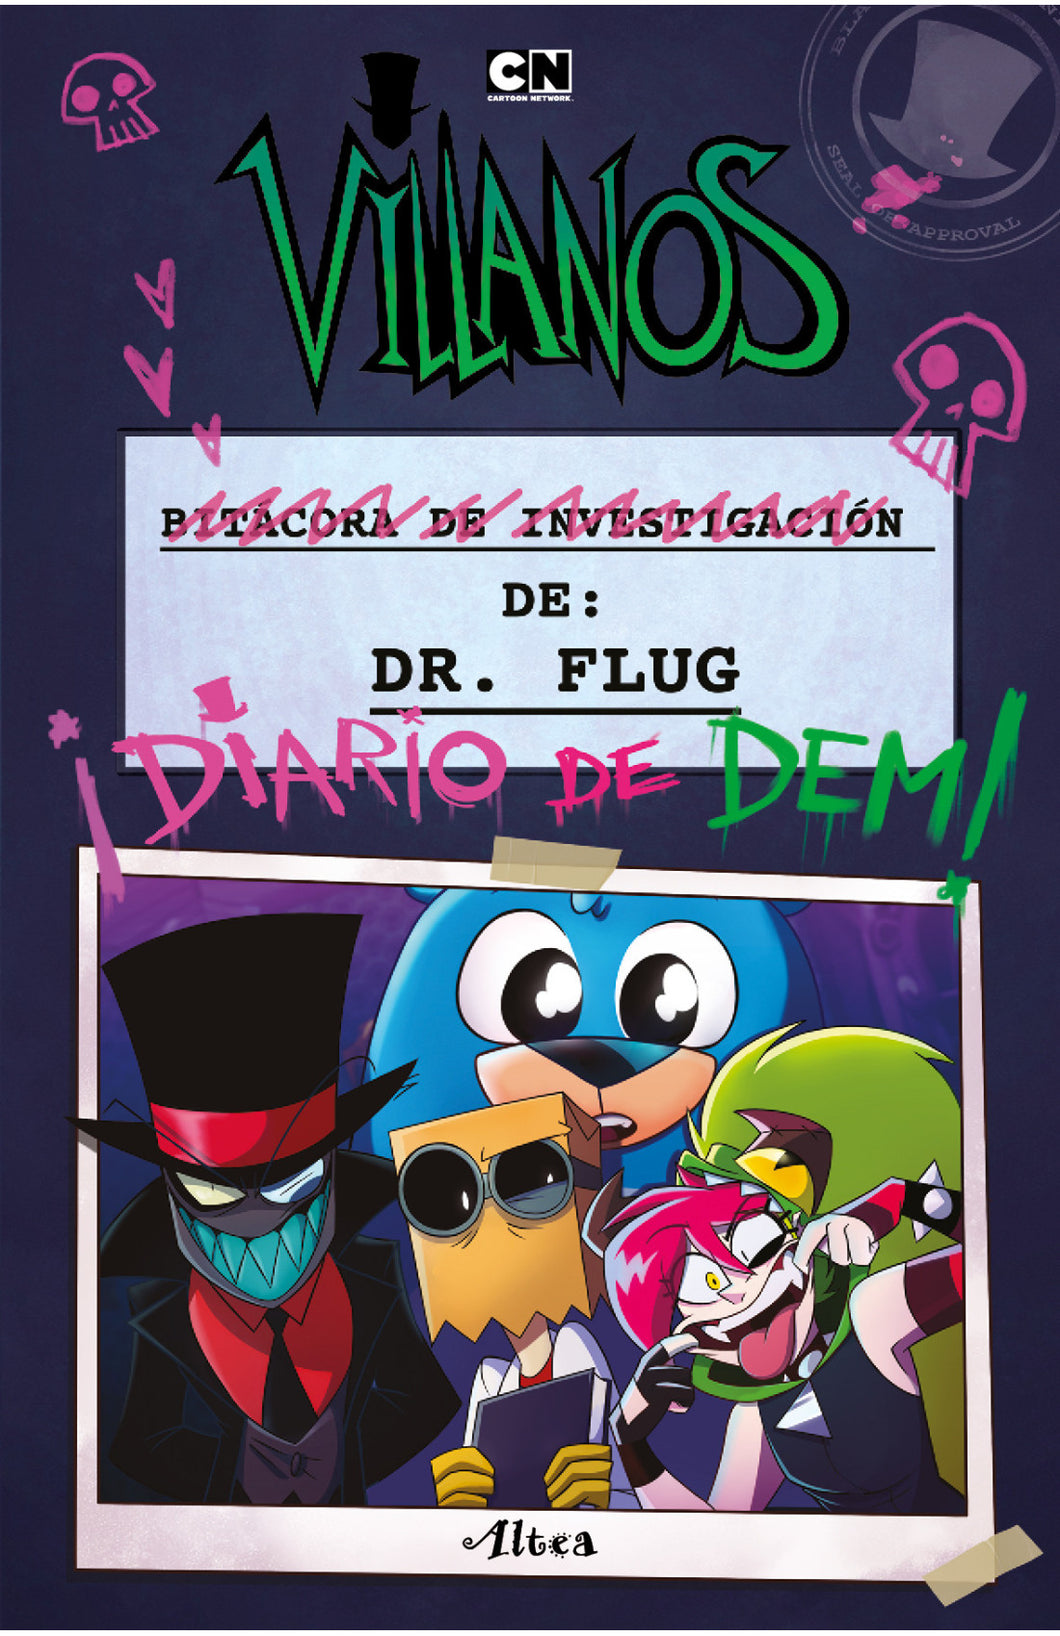 Villanos - Bitacora de investigación del Dr. Flug ¡Diario de Dem!   Alan Ituriel Cartoon Network